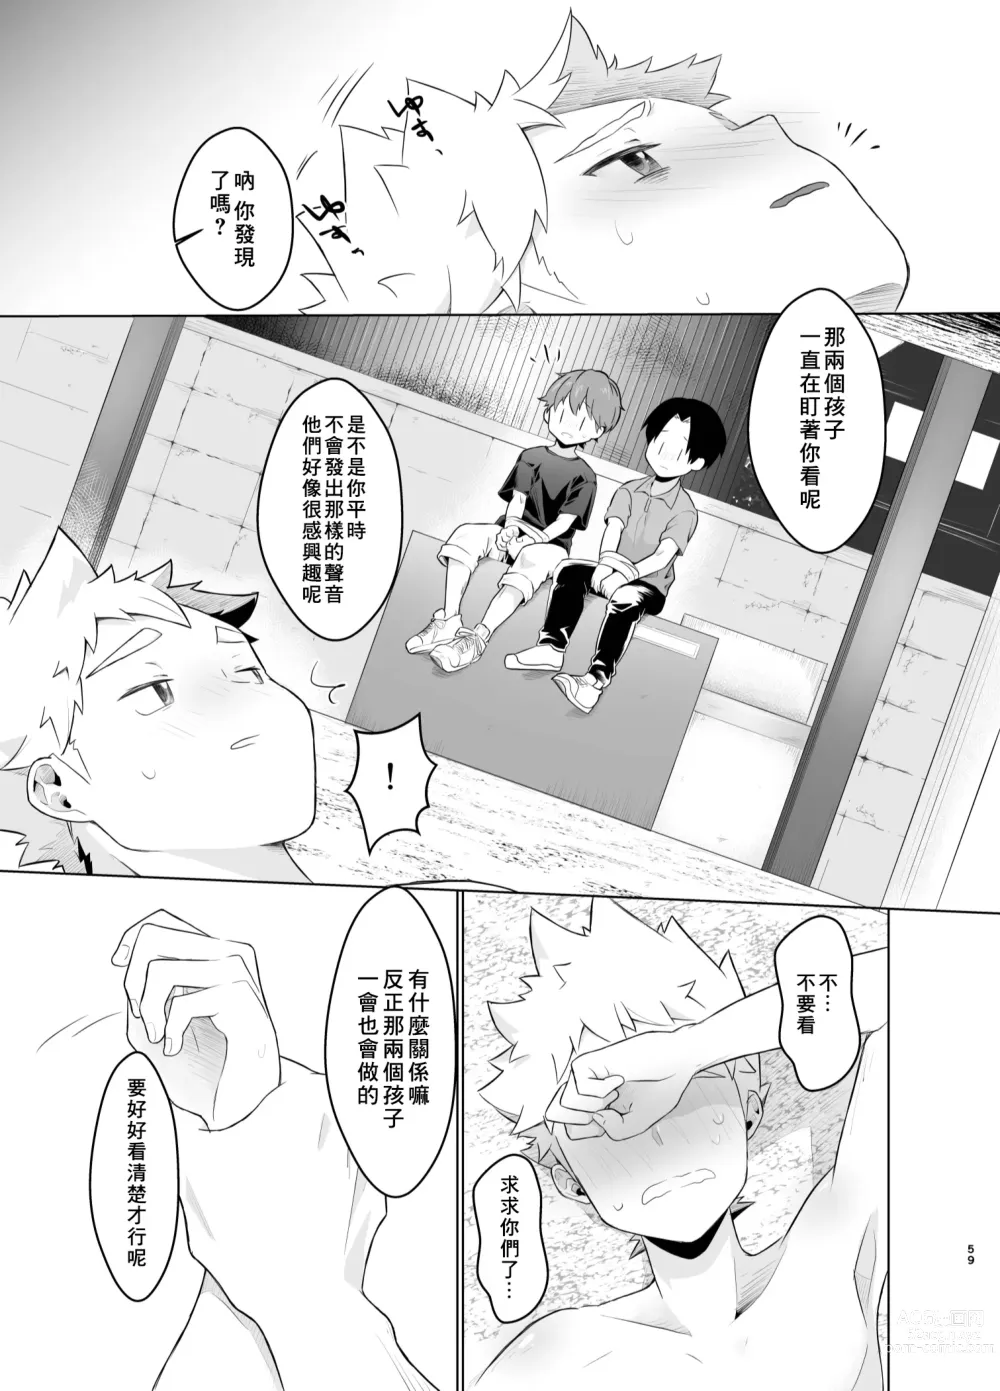 Page 58 of doujinshi Mahou Shoujo Mirakuru Mirachan丨魔法少女奇蹟米拉醬 (decensored)